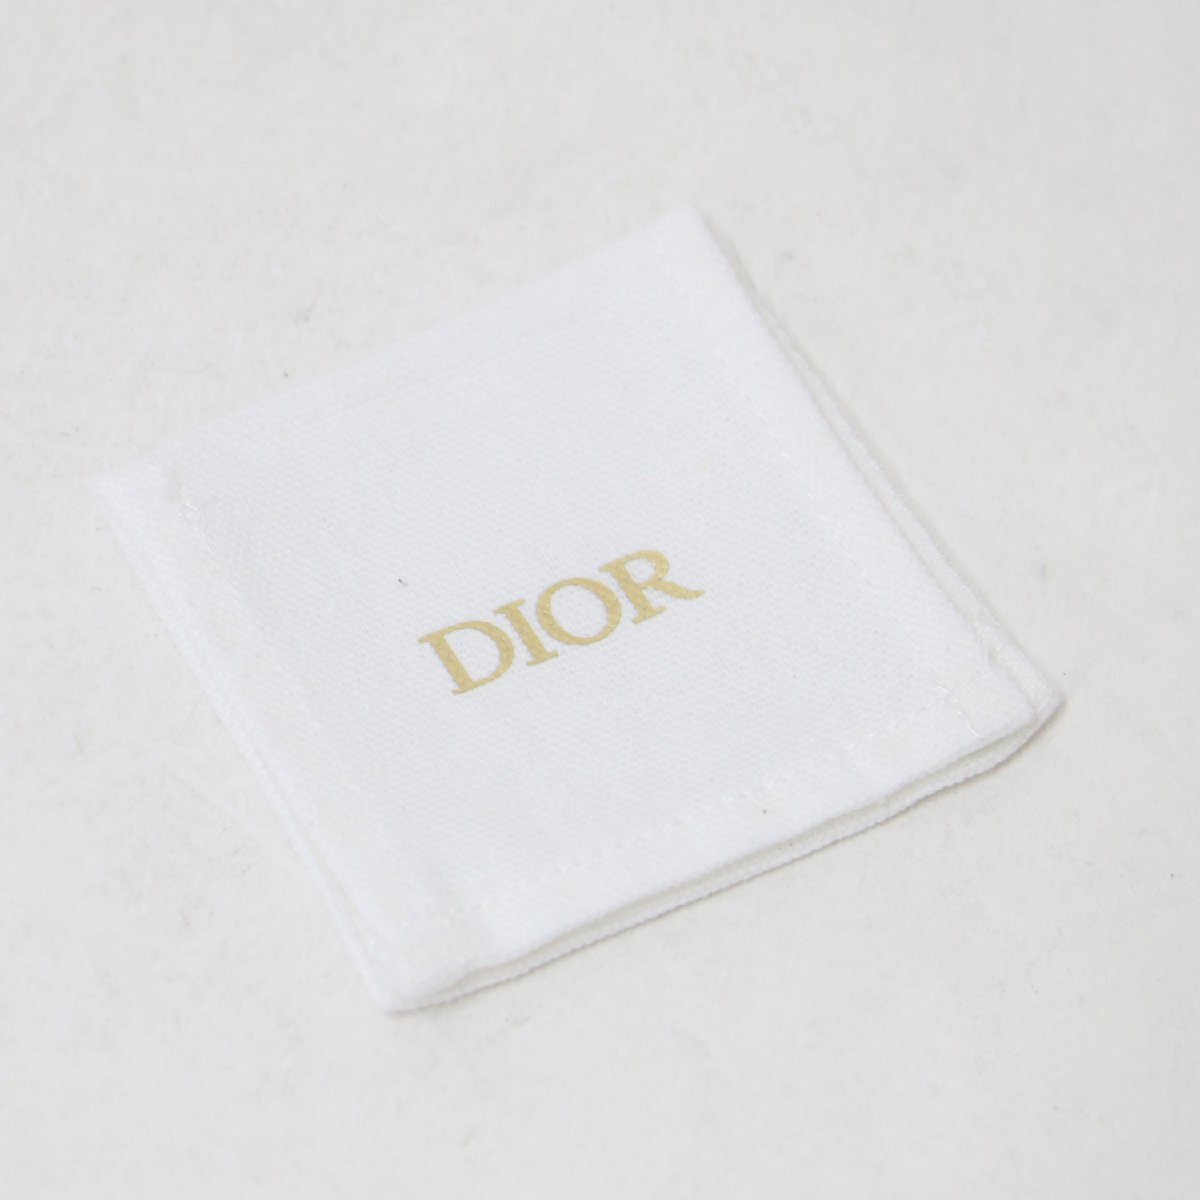 Christian Dior クリスチャンディオール 指輪 リング ゴールド ブラック 黒 S(10~11号) コード CODE ロゴ メタル GP アクセサリー_画像7